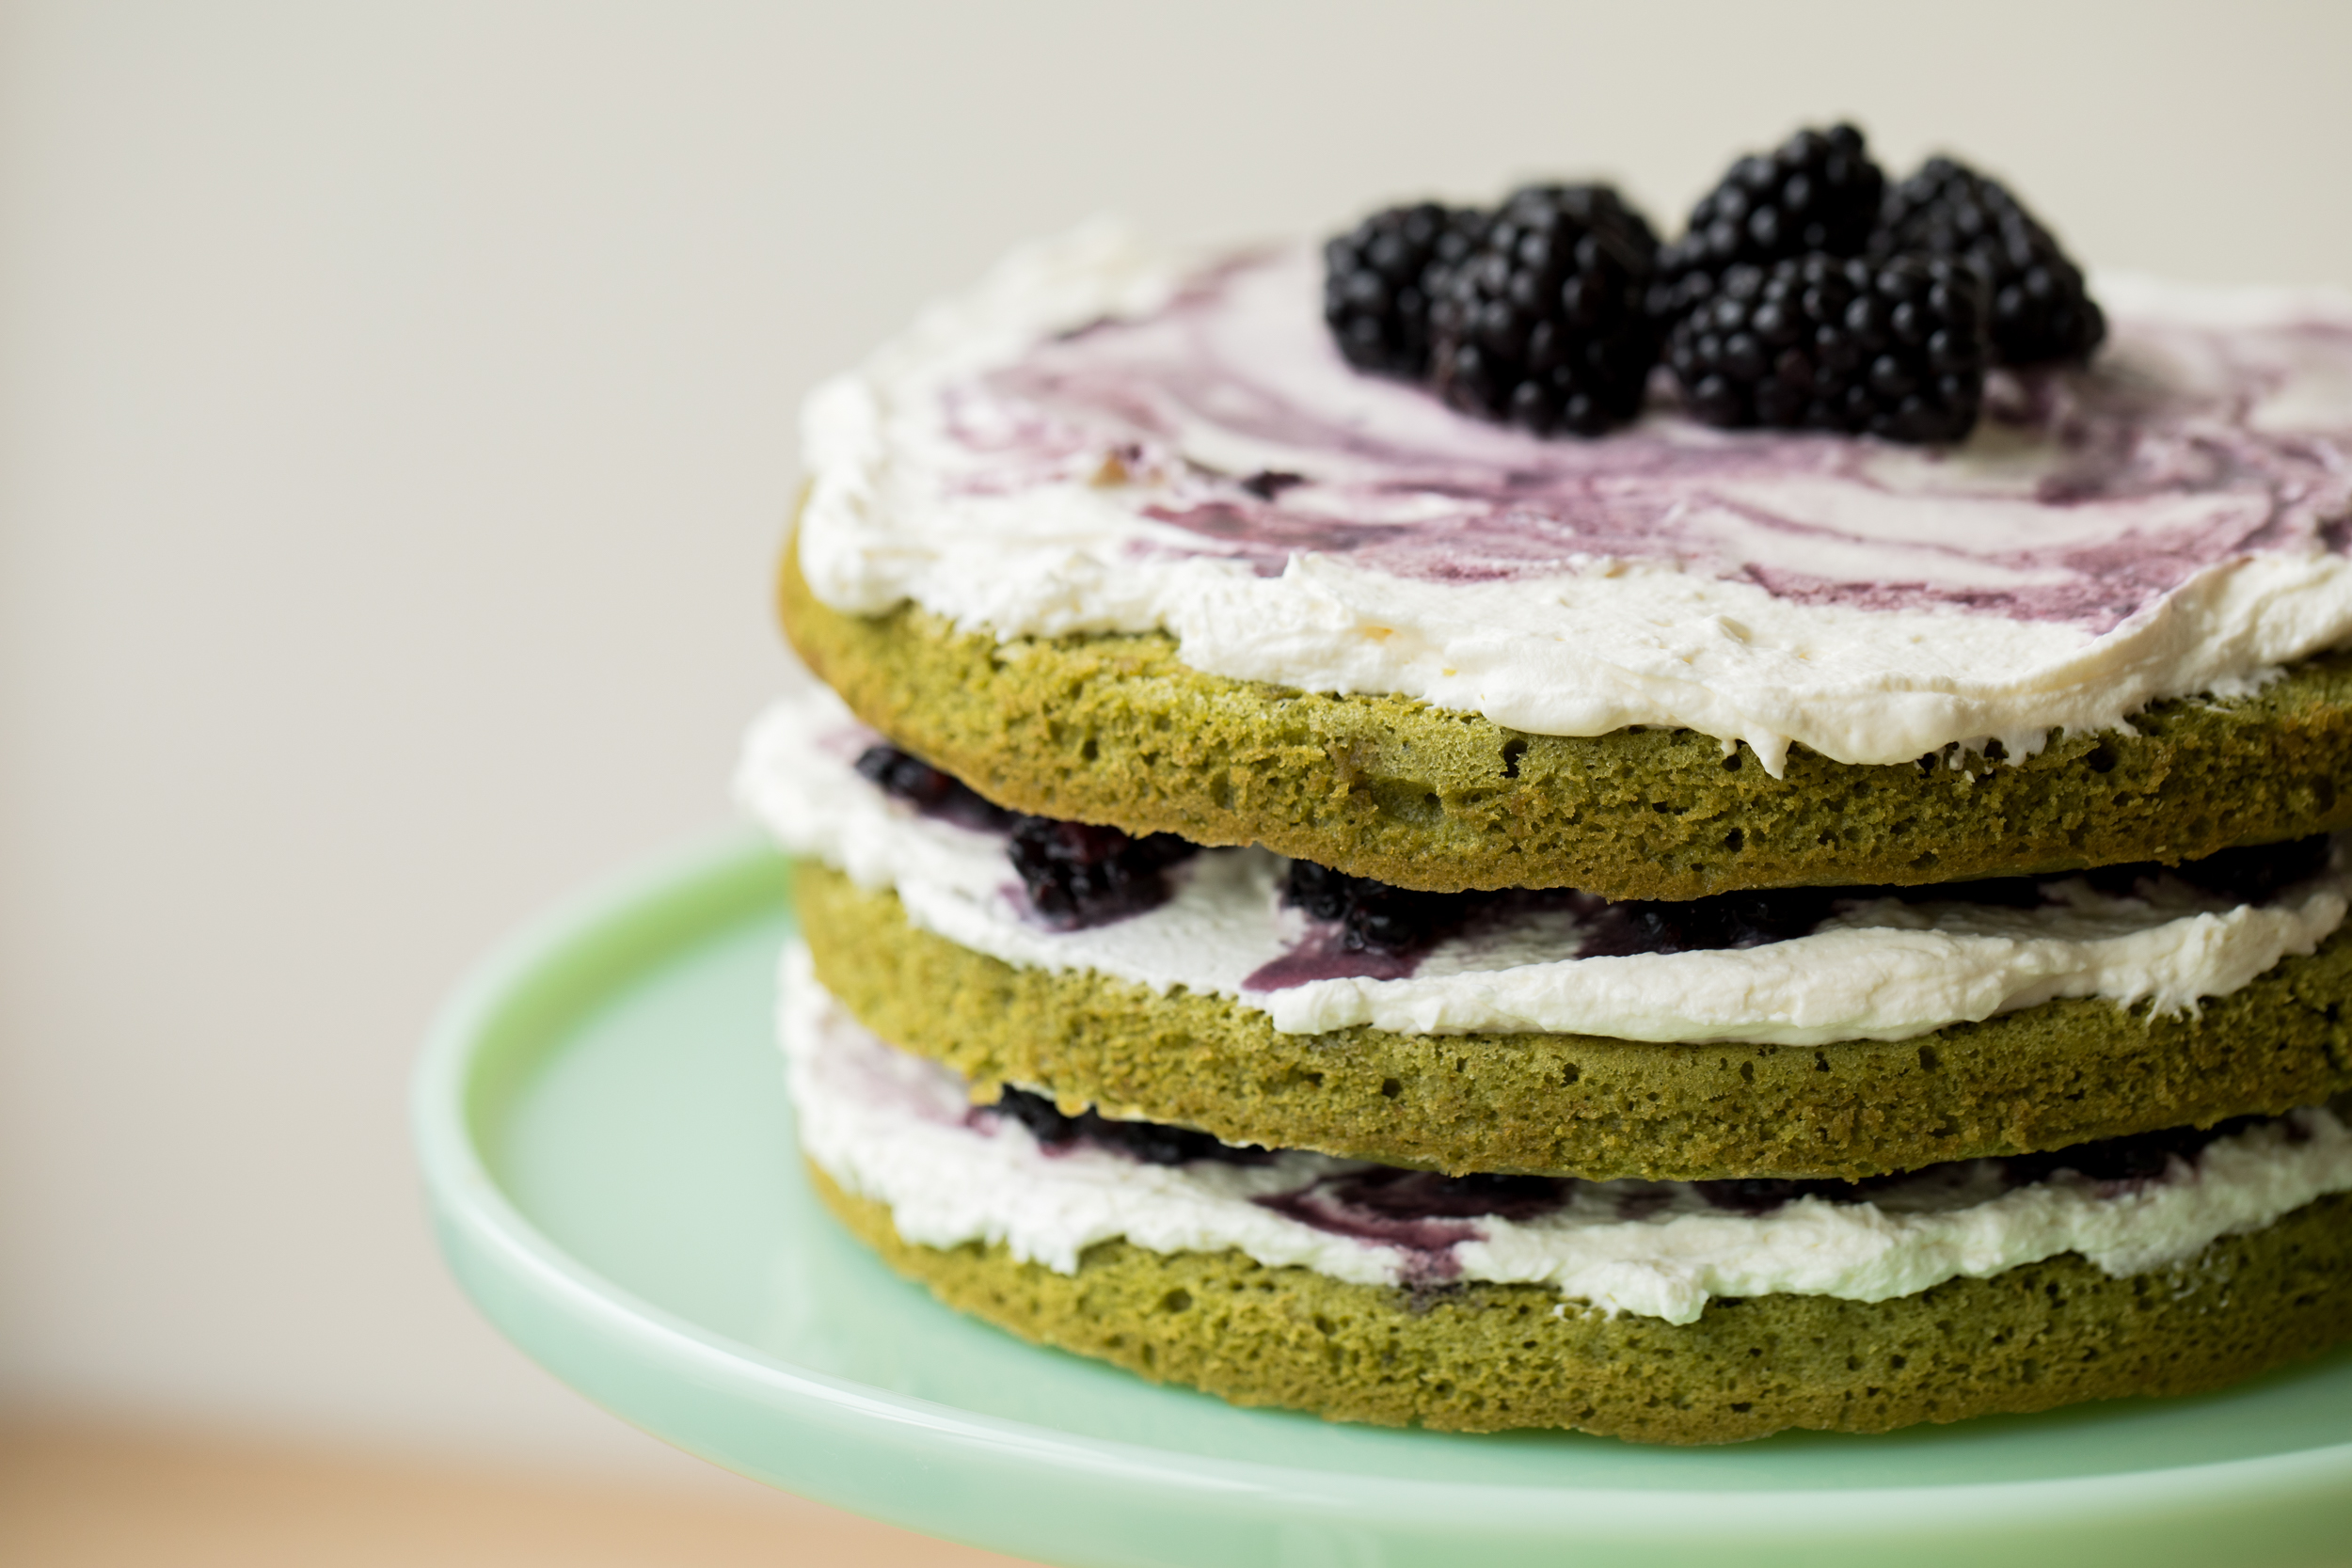 火柴黑莓层蛋糕的侧视图：四个绿色层夹着奶油和捣碎的黑莓，顶部覆盖着奶油和整个黑莓。蛋糕坐在玉饼架上。